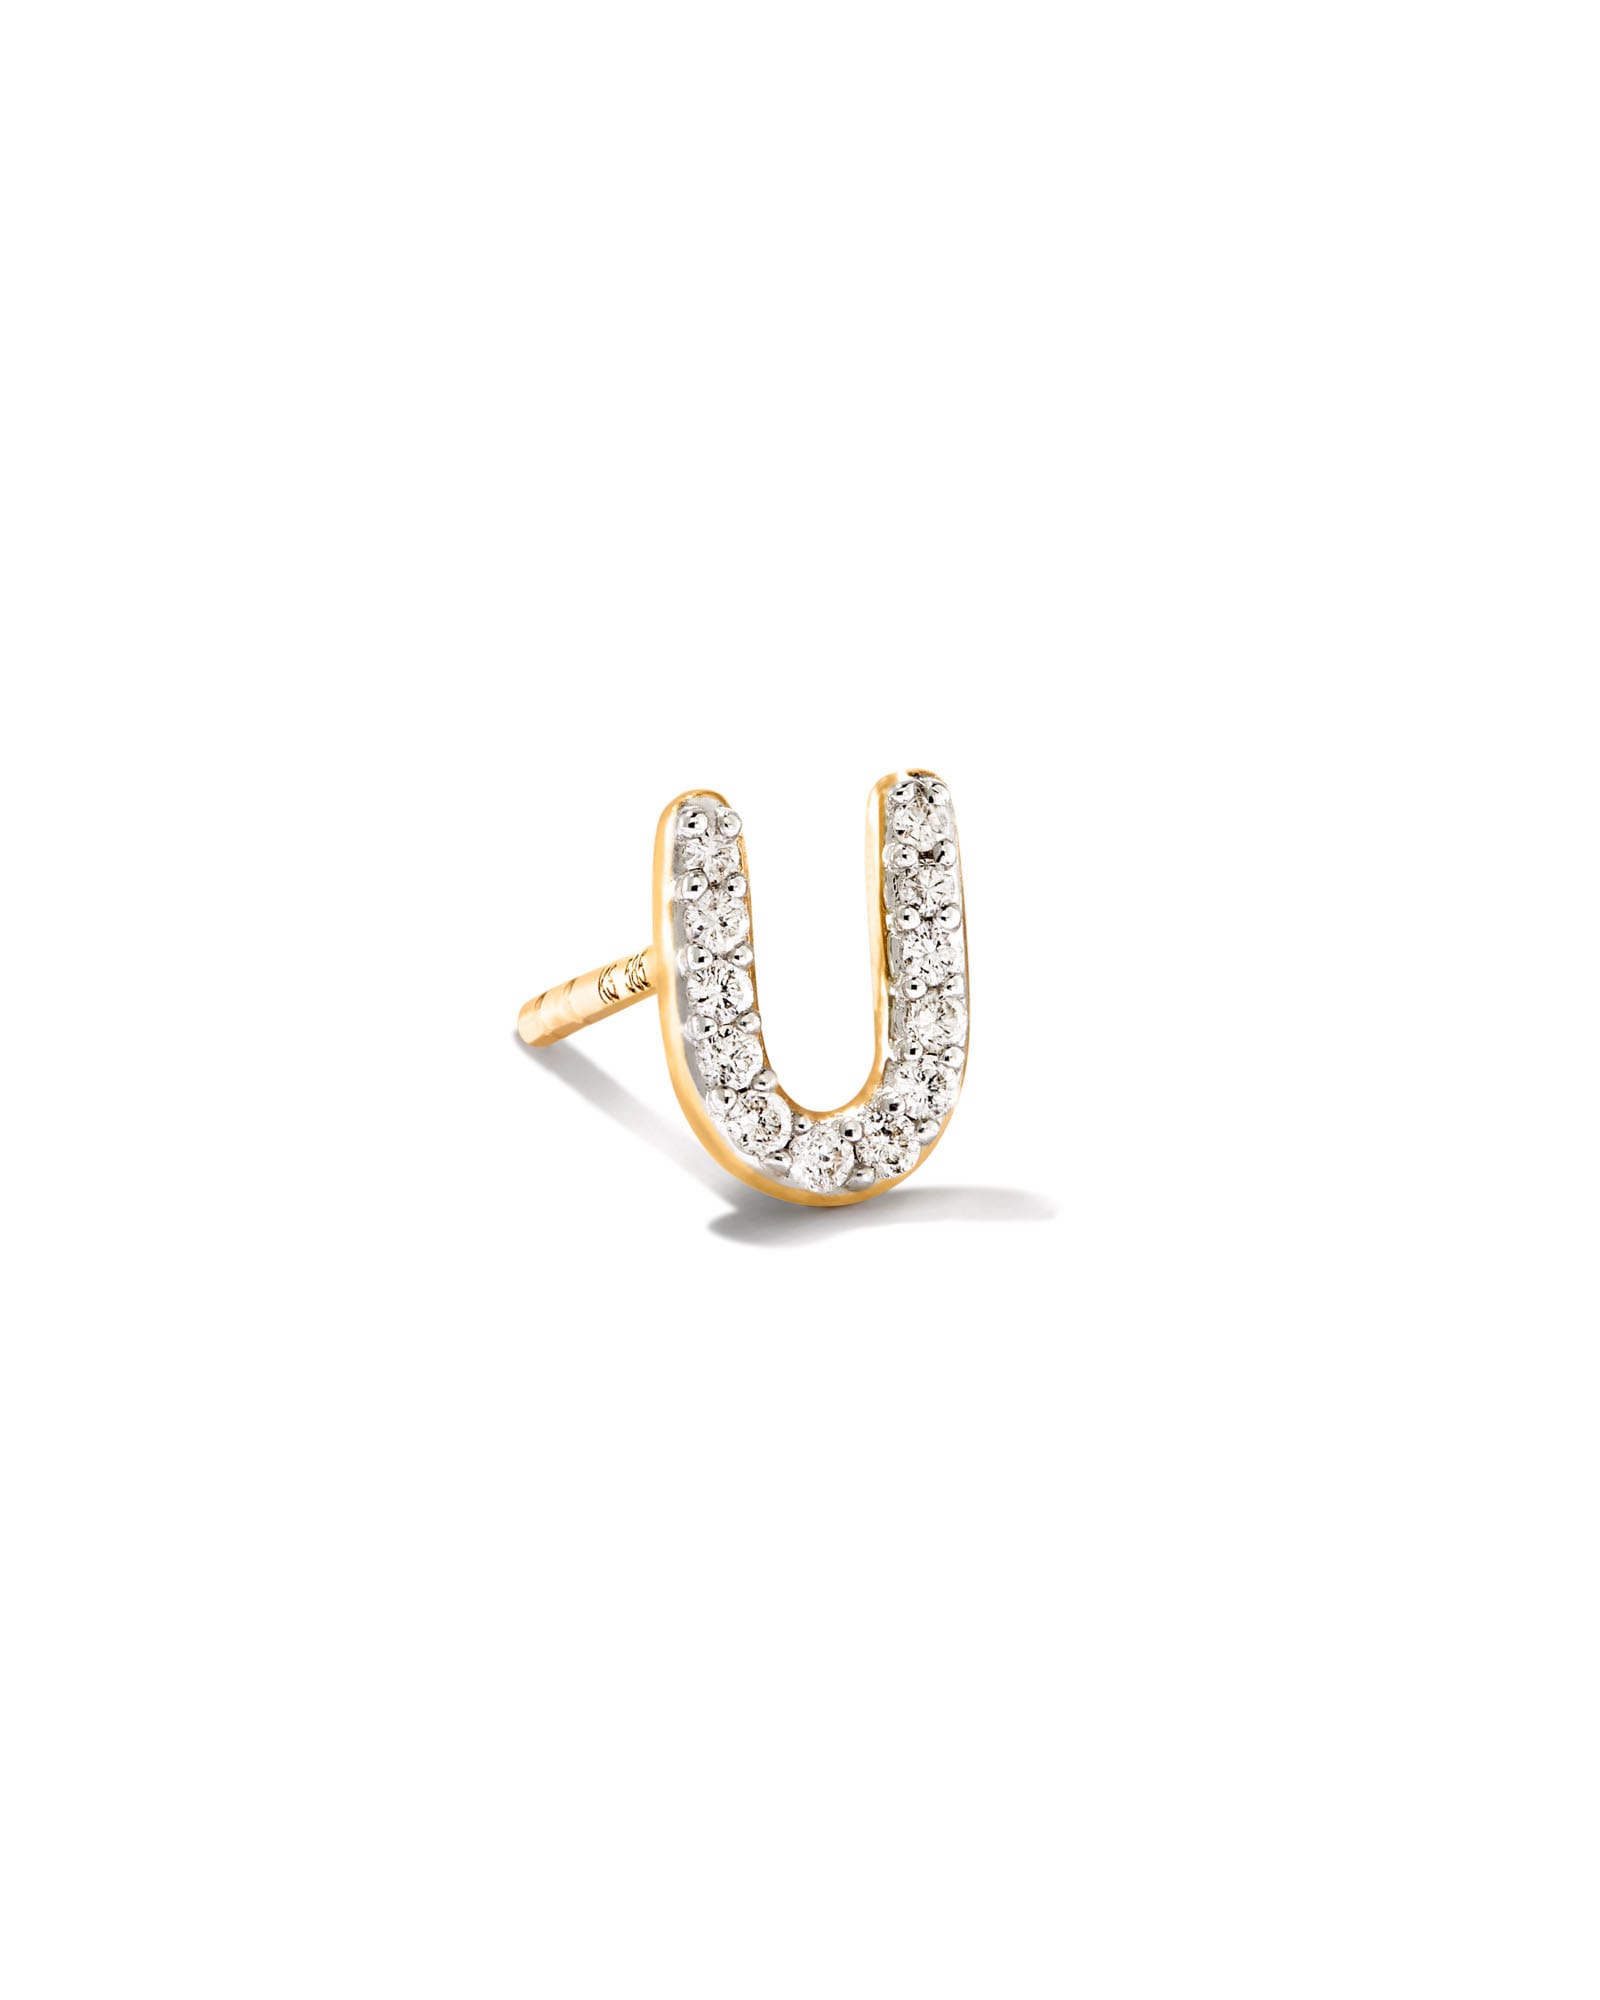 Kendra Scott Letter U 14k Yellow Gold Single Stud Earring in White Diamond | Diamonds